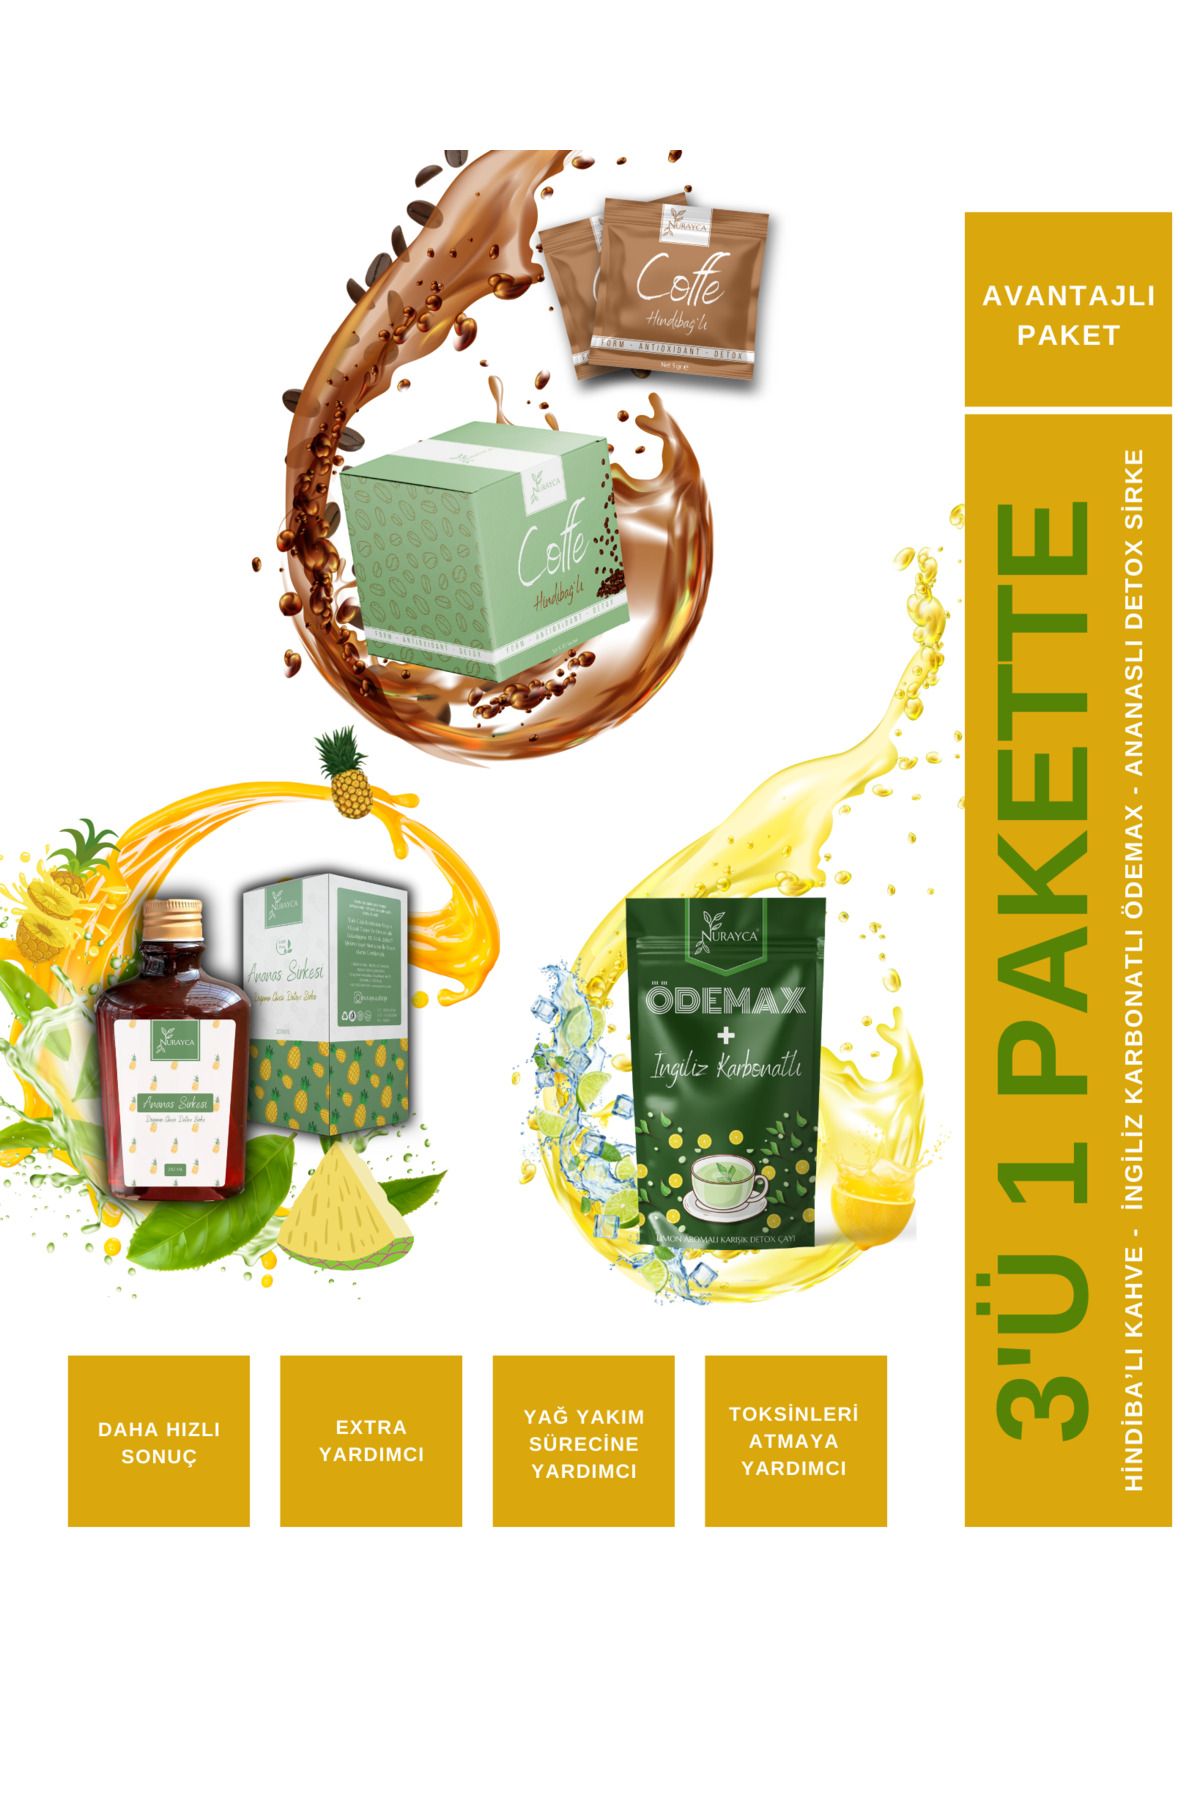 NURAYCA 3'lü Avantaj Paketi / Hindiba'lı Kahve - Ingiliz Karbonat'lı Ödemax - Ananas'lı Detox Sirkesi